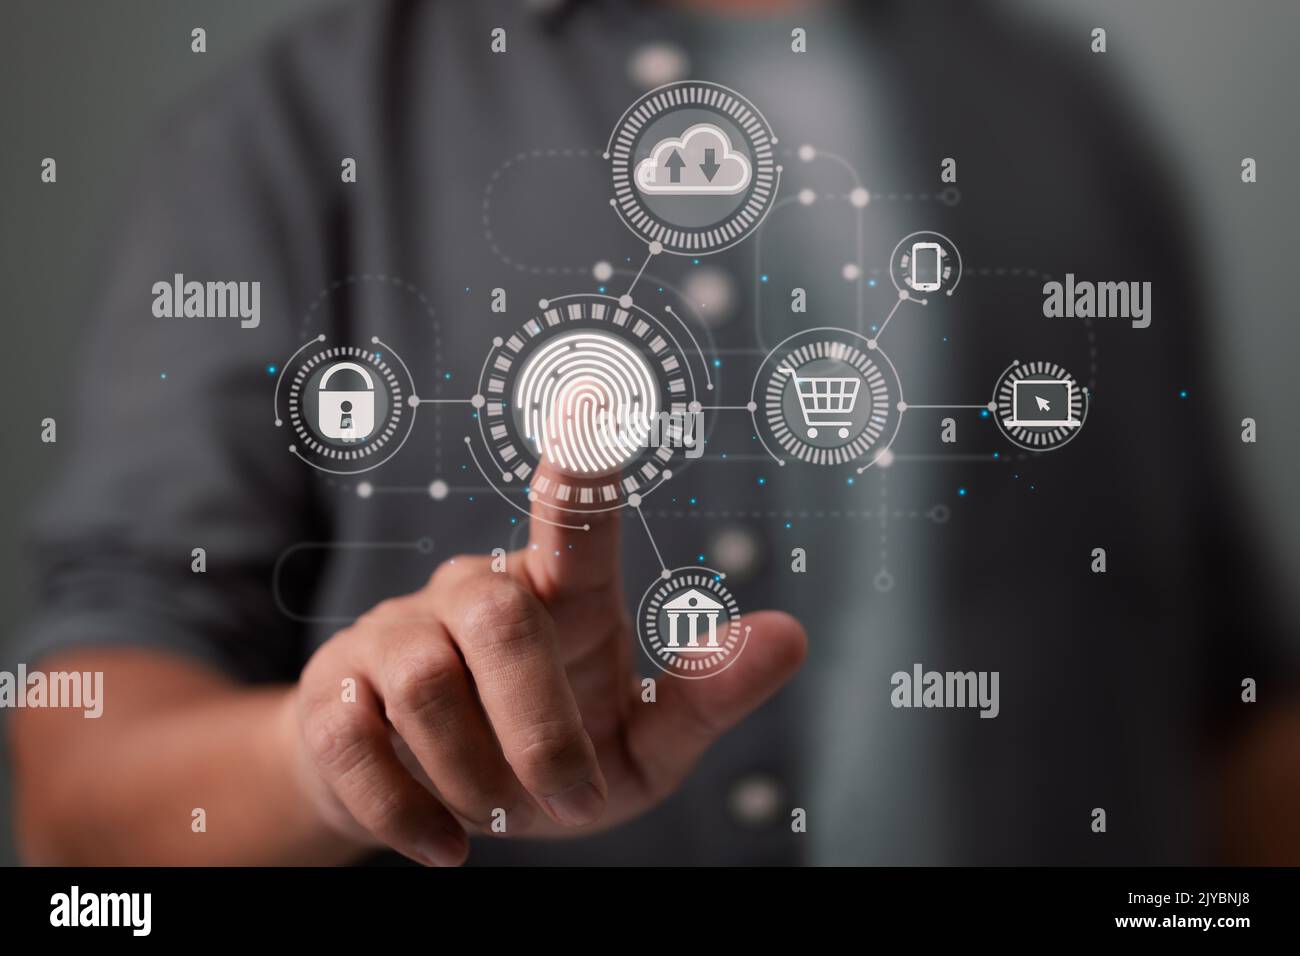 La scansione delle impronte digitali dell'uomo d'affari offre un'interfaccia sicura per pagamenti online, servizi bancari e connessioni di rete per il cloud computing. Foto Stock